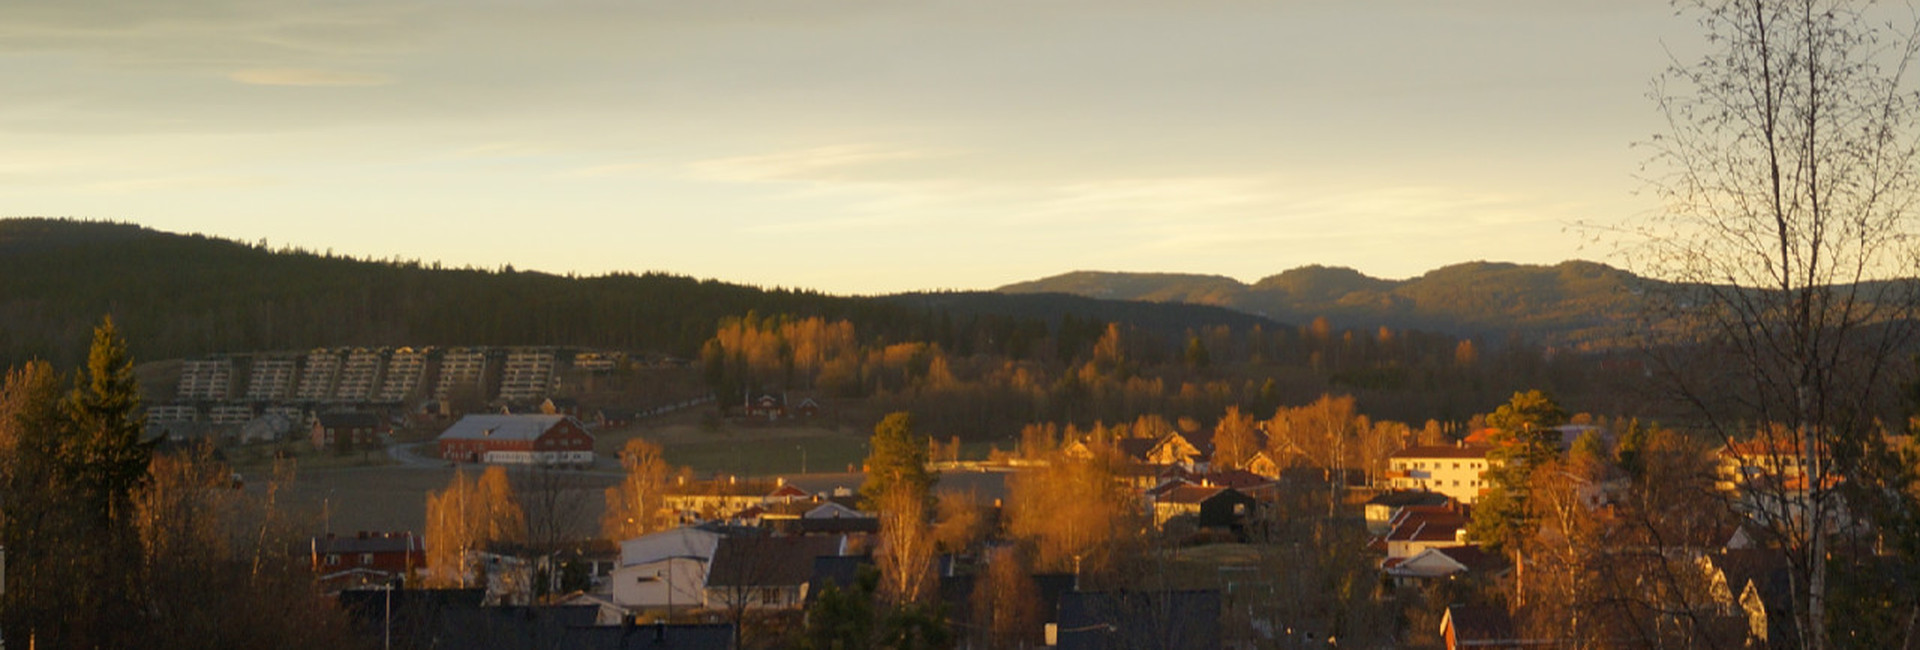 Utsikt fra E58 mot Bogstad, april.jpg